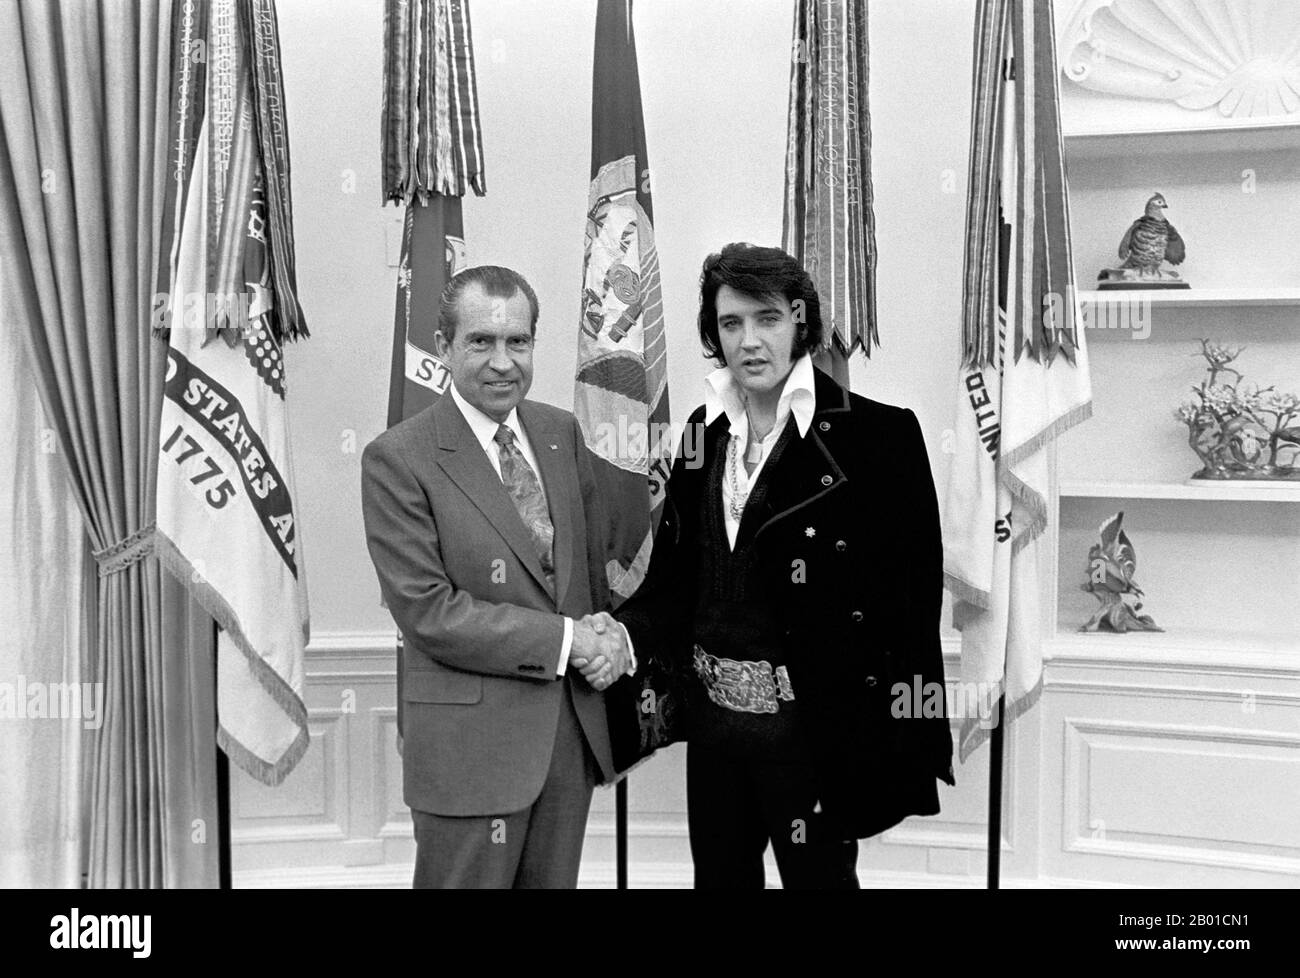 USA: Präsident Richard Nixon (9. Januar 1913 - 22. April 1994) schüttelt sich mit Elvis Presley (8. Januar 1935 - 16. August 1977) am 21. Dezember 1970 im Weißen Haus die Hände. Elvis Presley traf Präsident Richard Nixon am 21.. Dezember 1970 im Oval Office des Weißen Hauses. Die Nixon Library & Birthplace verkauft eine Reihe von Souvenir-Artikeln mit diesem Foto und der Beschriftung „The President & the King“. Frech wird gesagt, dass dieses Bild "von den zwei größten Plattenkünstlern des 20.. Jahrhunderts" sei. Stockfoto